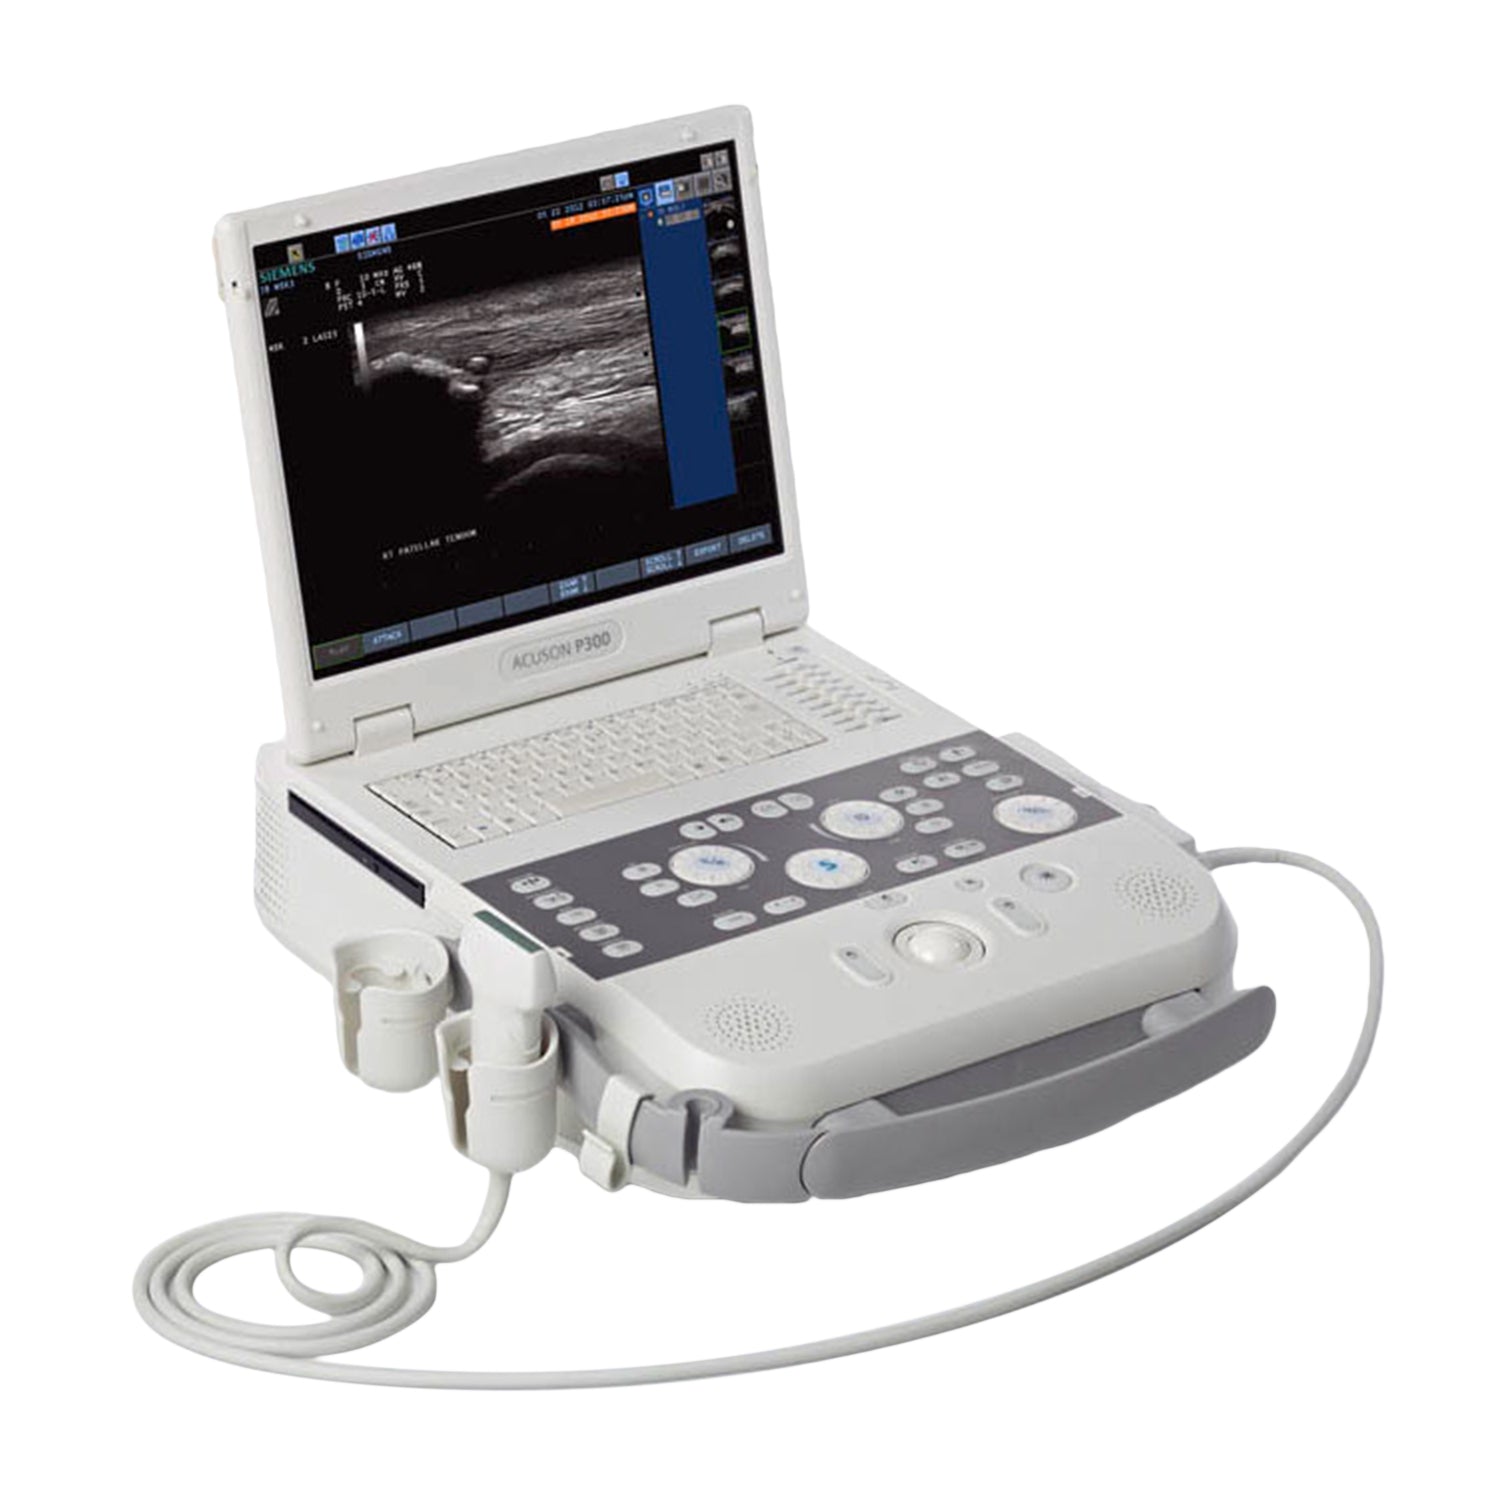 Siemens Acuson P300 Ultrasound